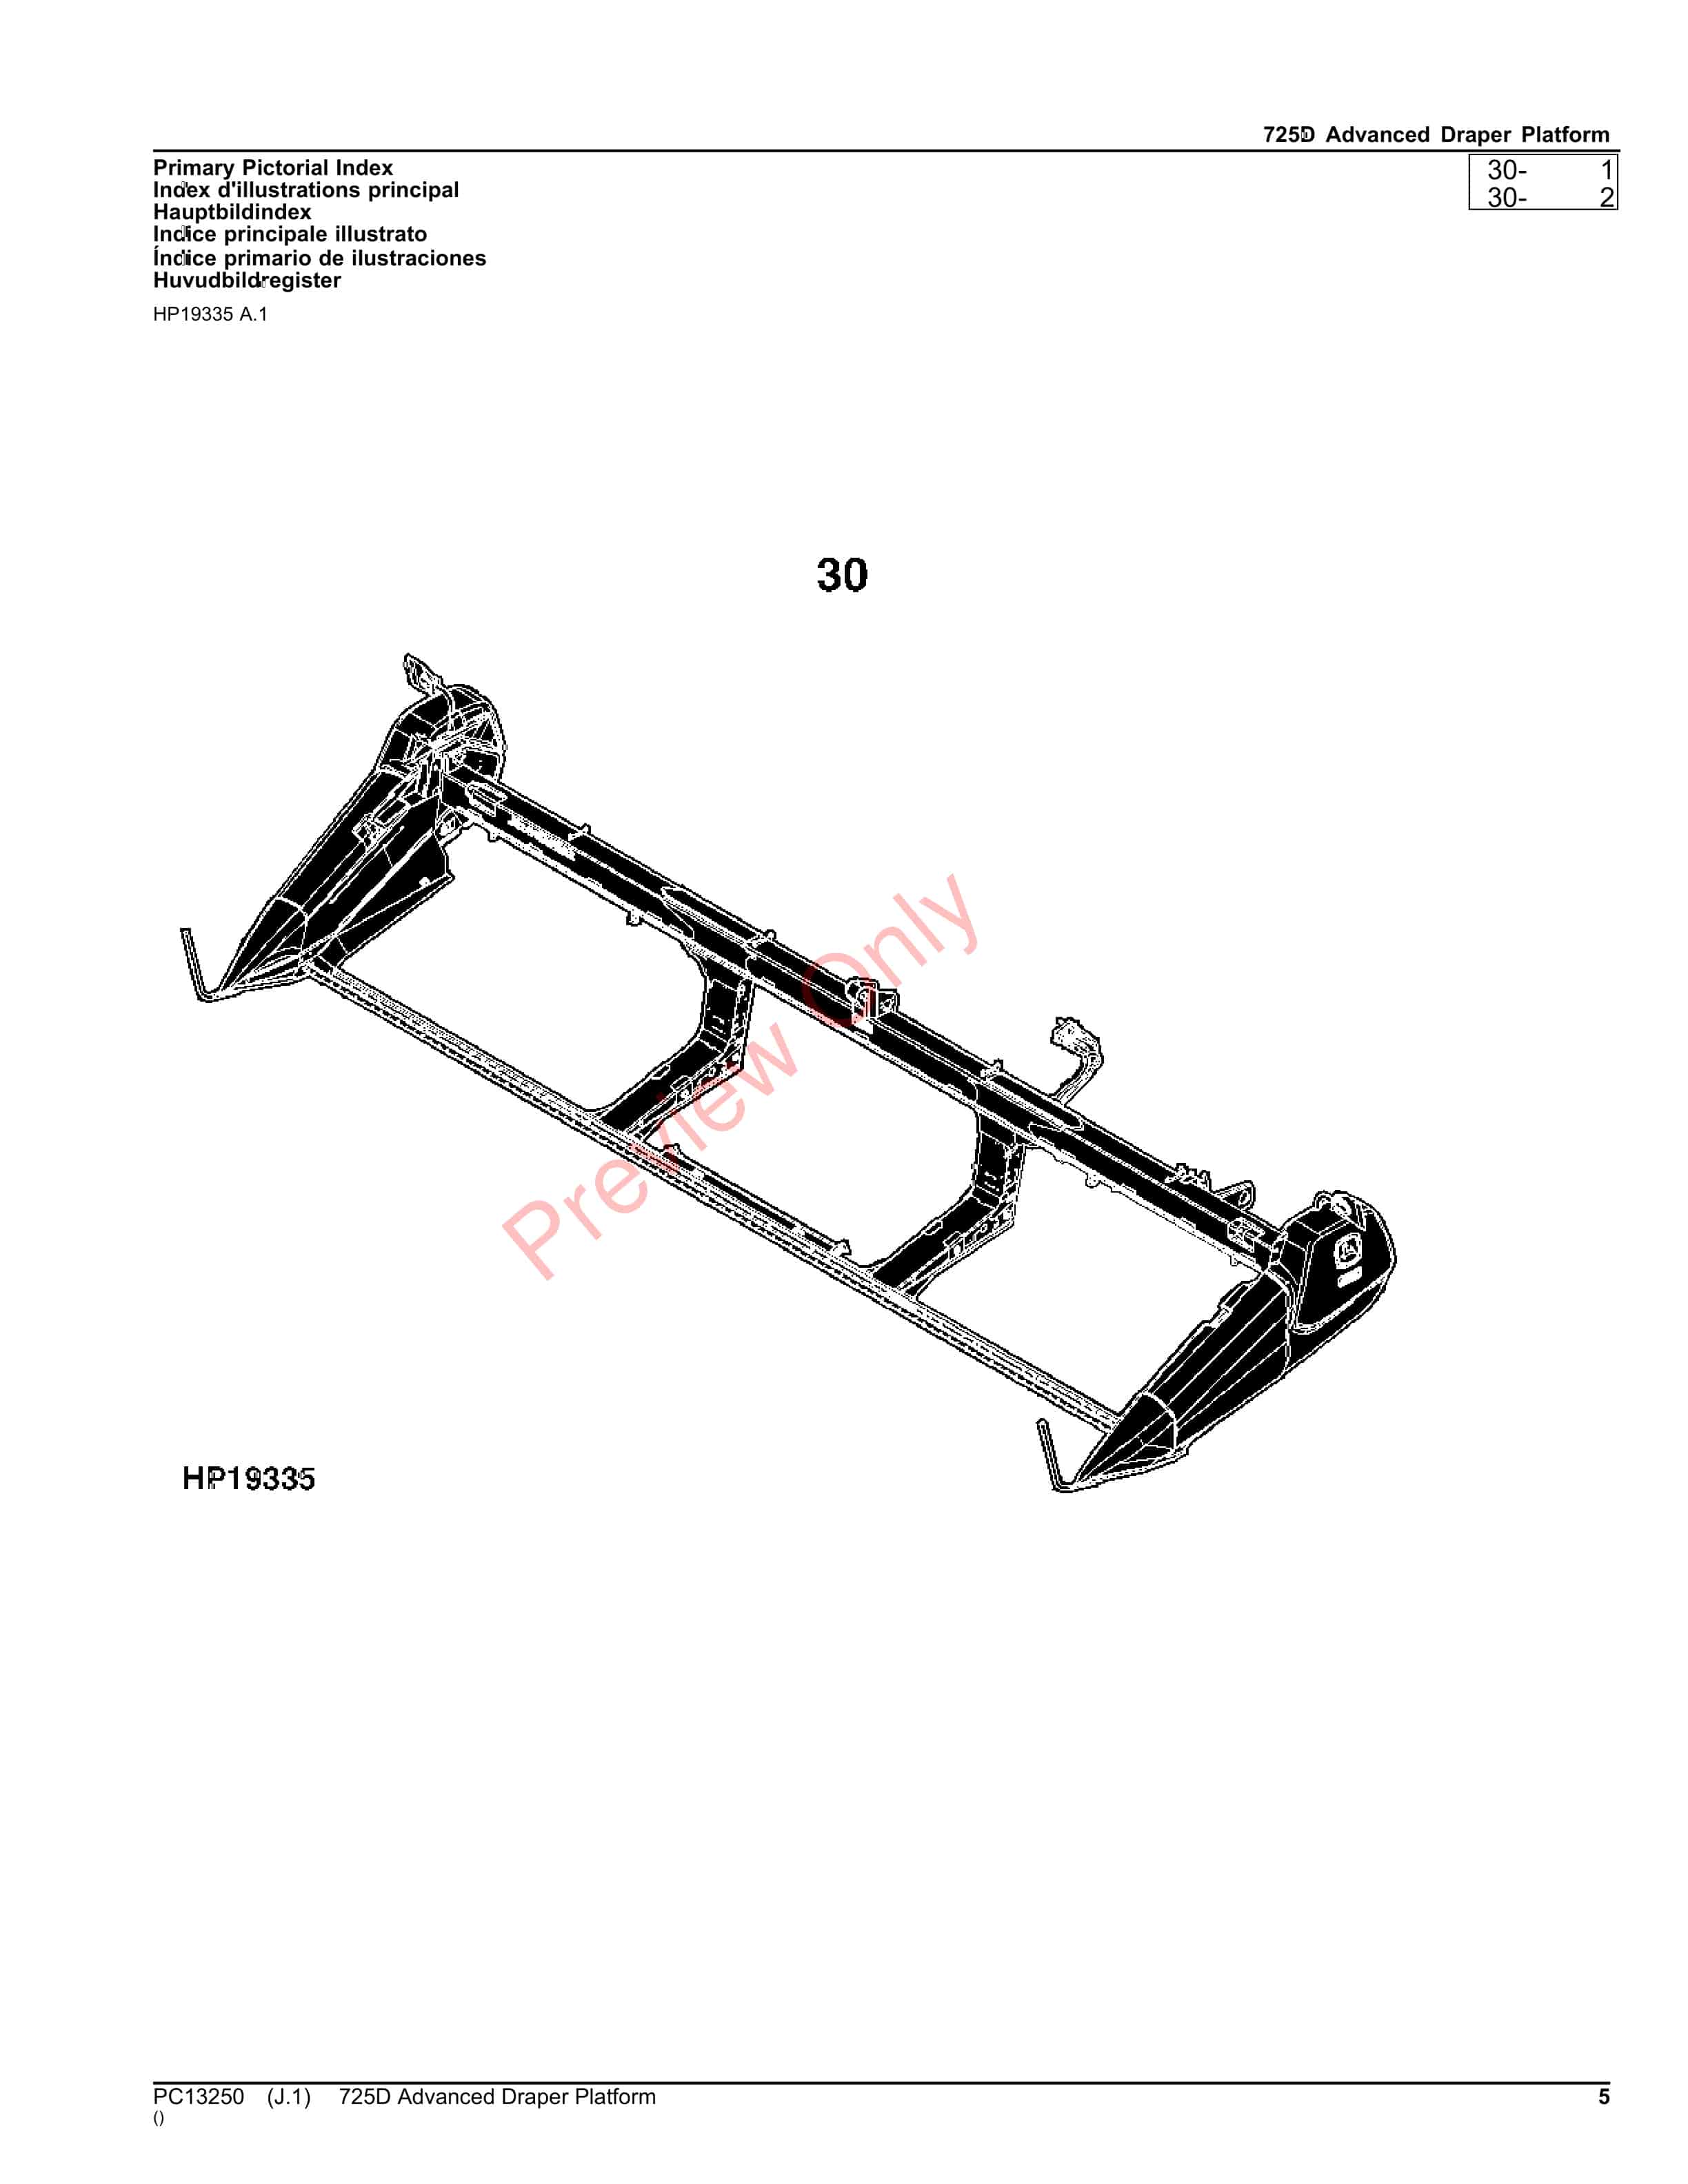 John Deere 725D Advanced Draper Platform Parts Catalog PC13250 26OCT23-5